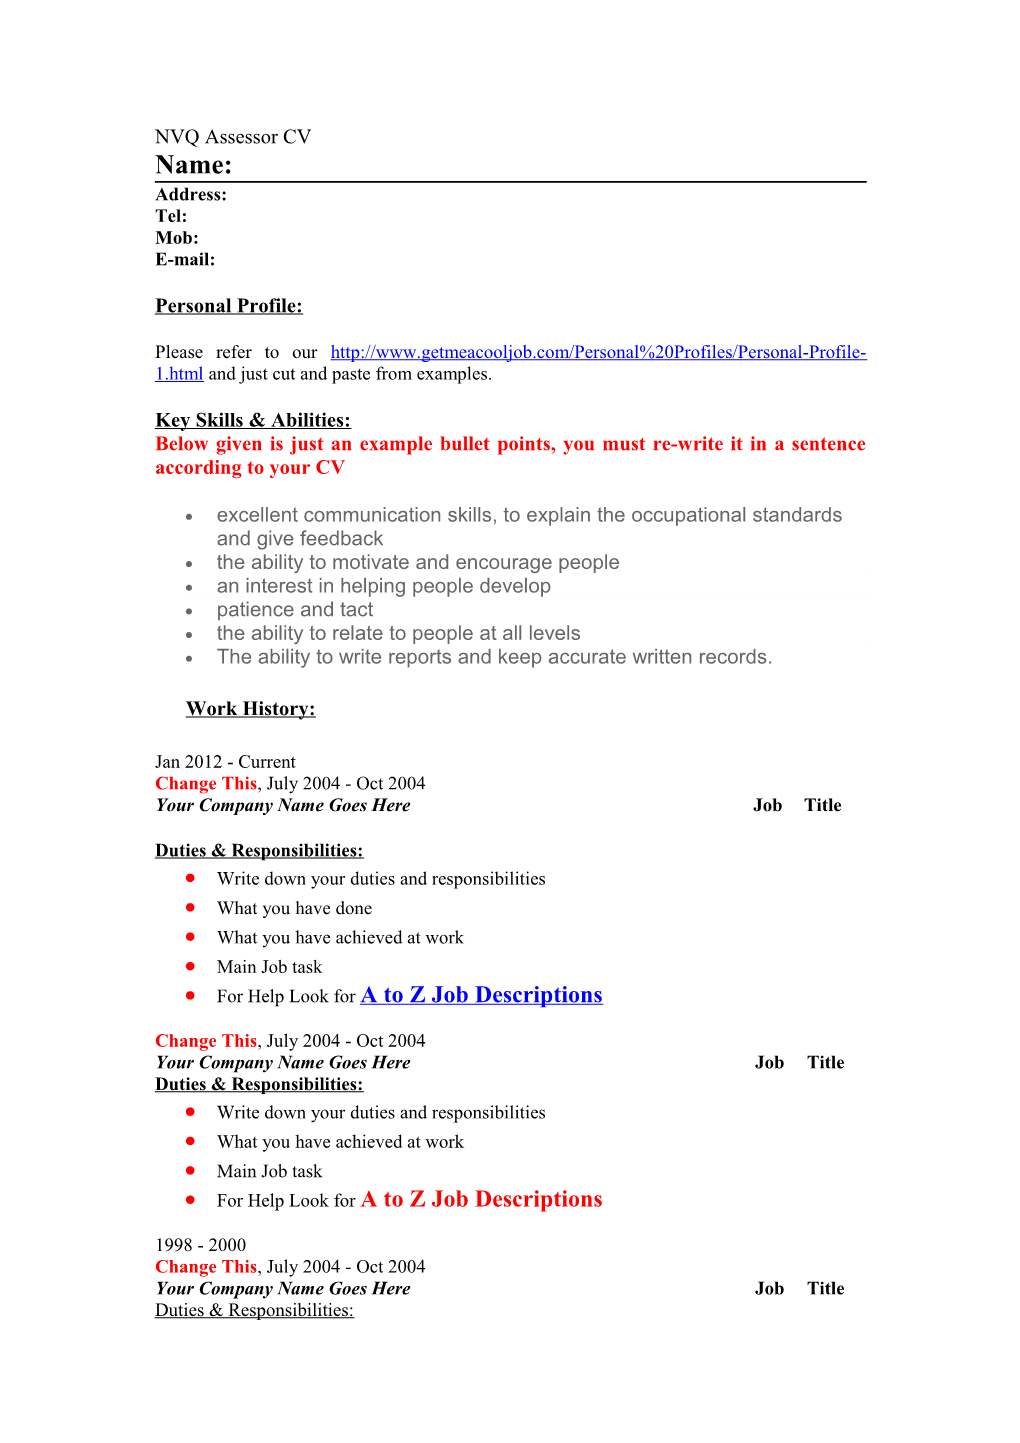 NVQ Assessor Job Descriptions